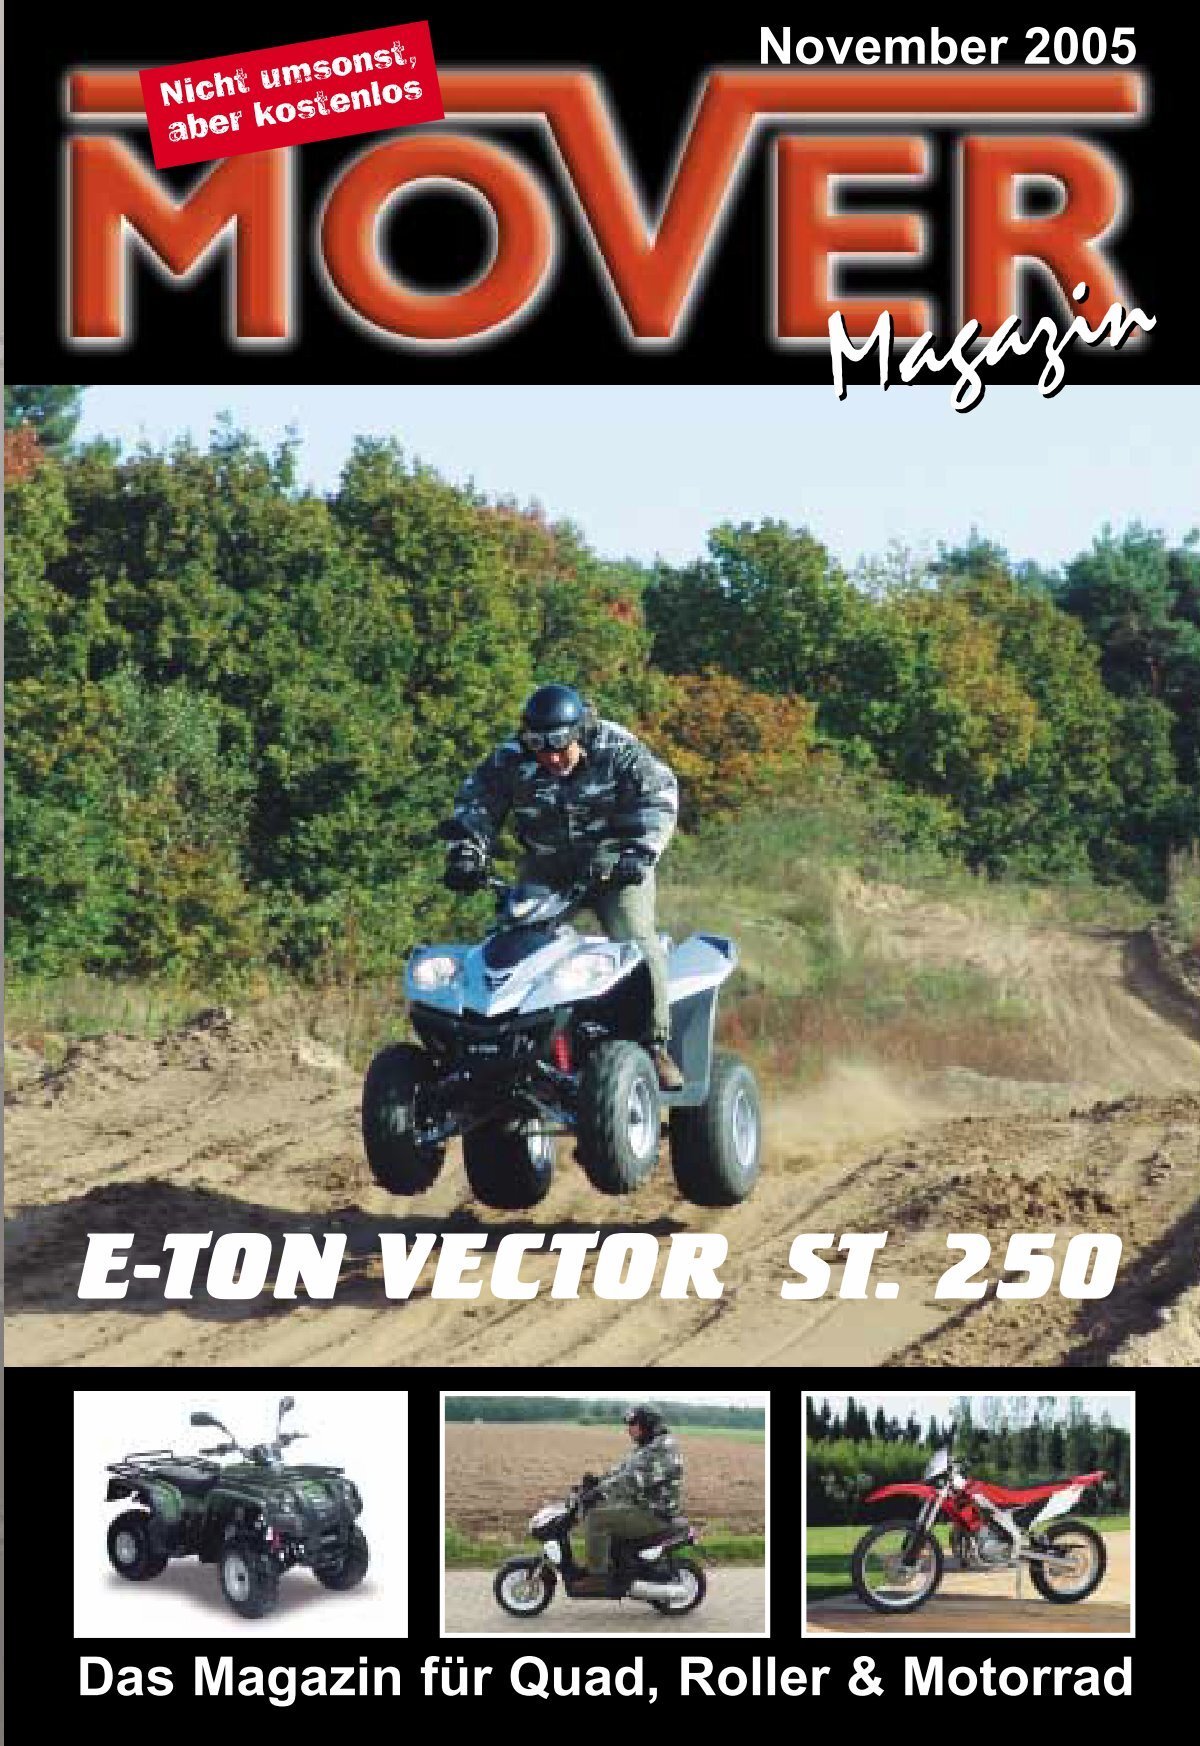 7 e-ton vector st. 250 - Mover Magazin